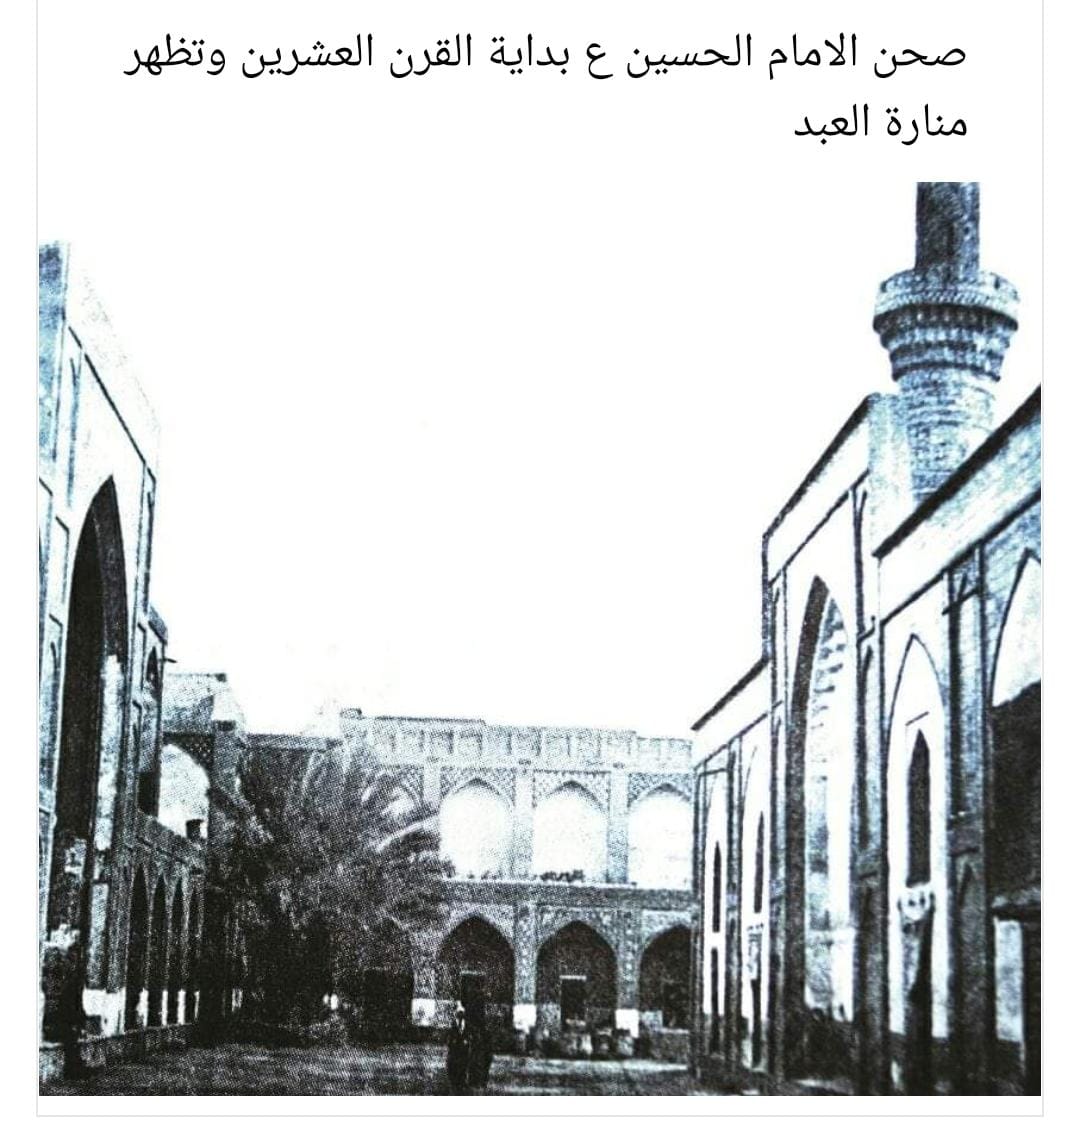 صحن الامام الحسين عليه السلام بداية القرن العشرين وتظهر منارة العبد